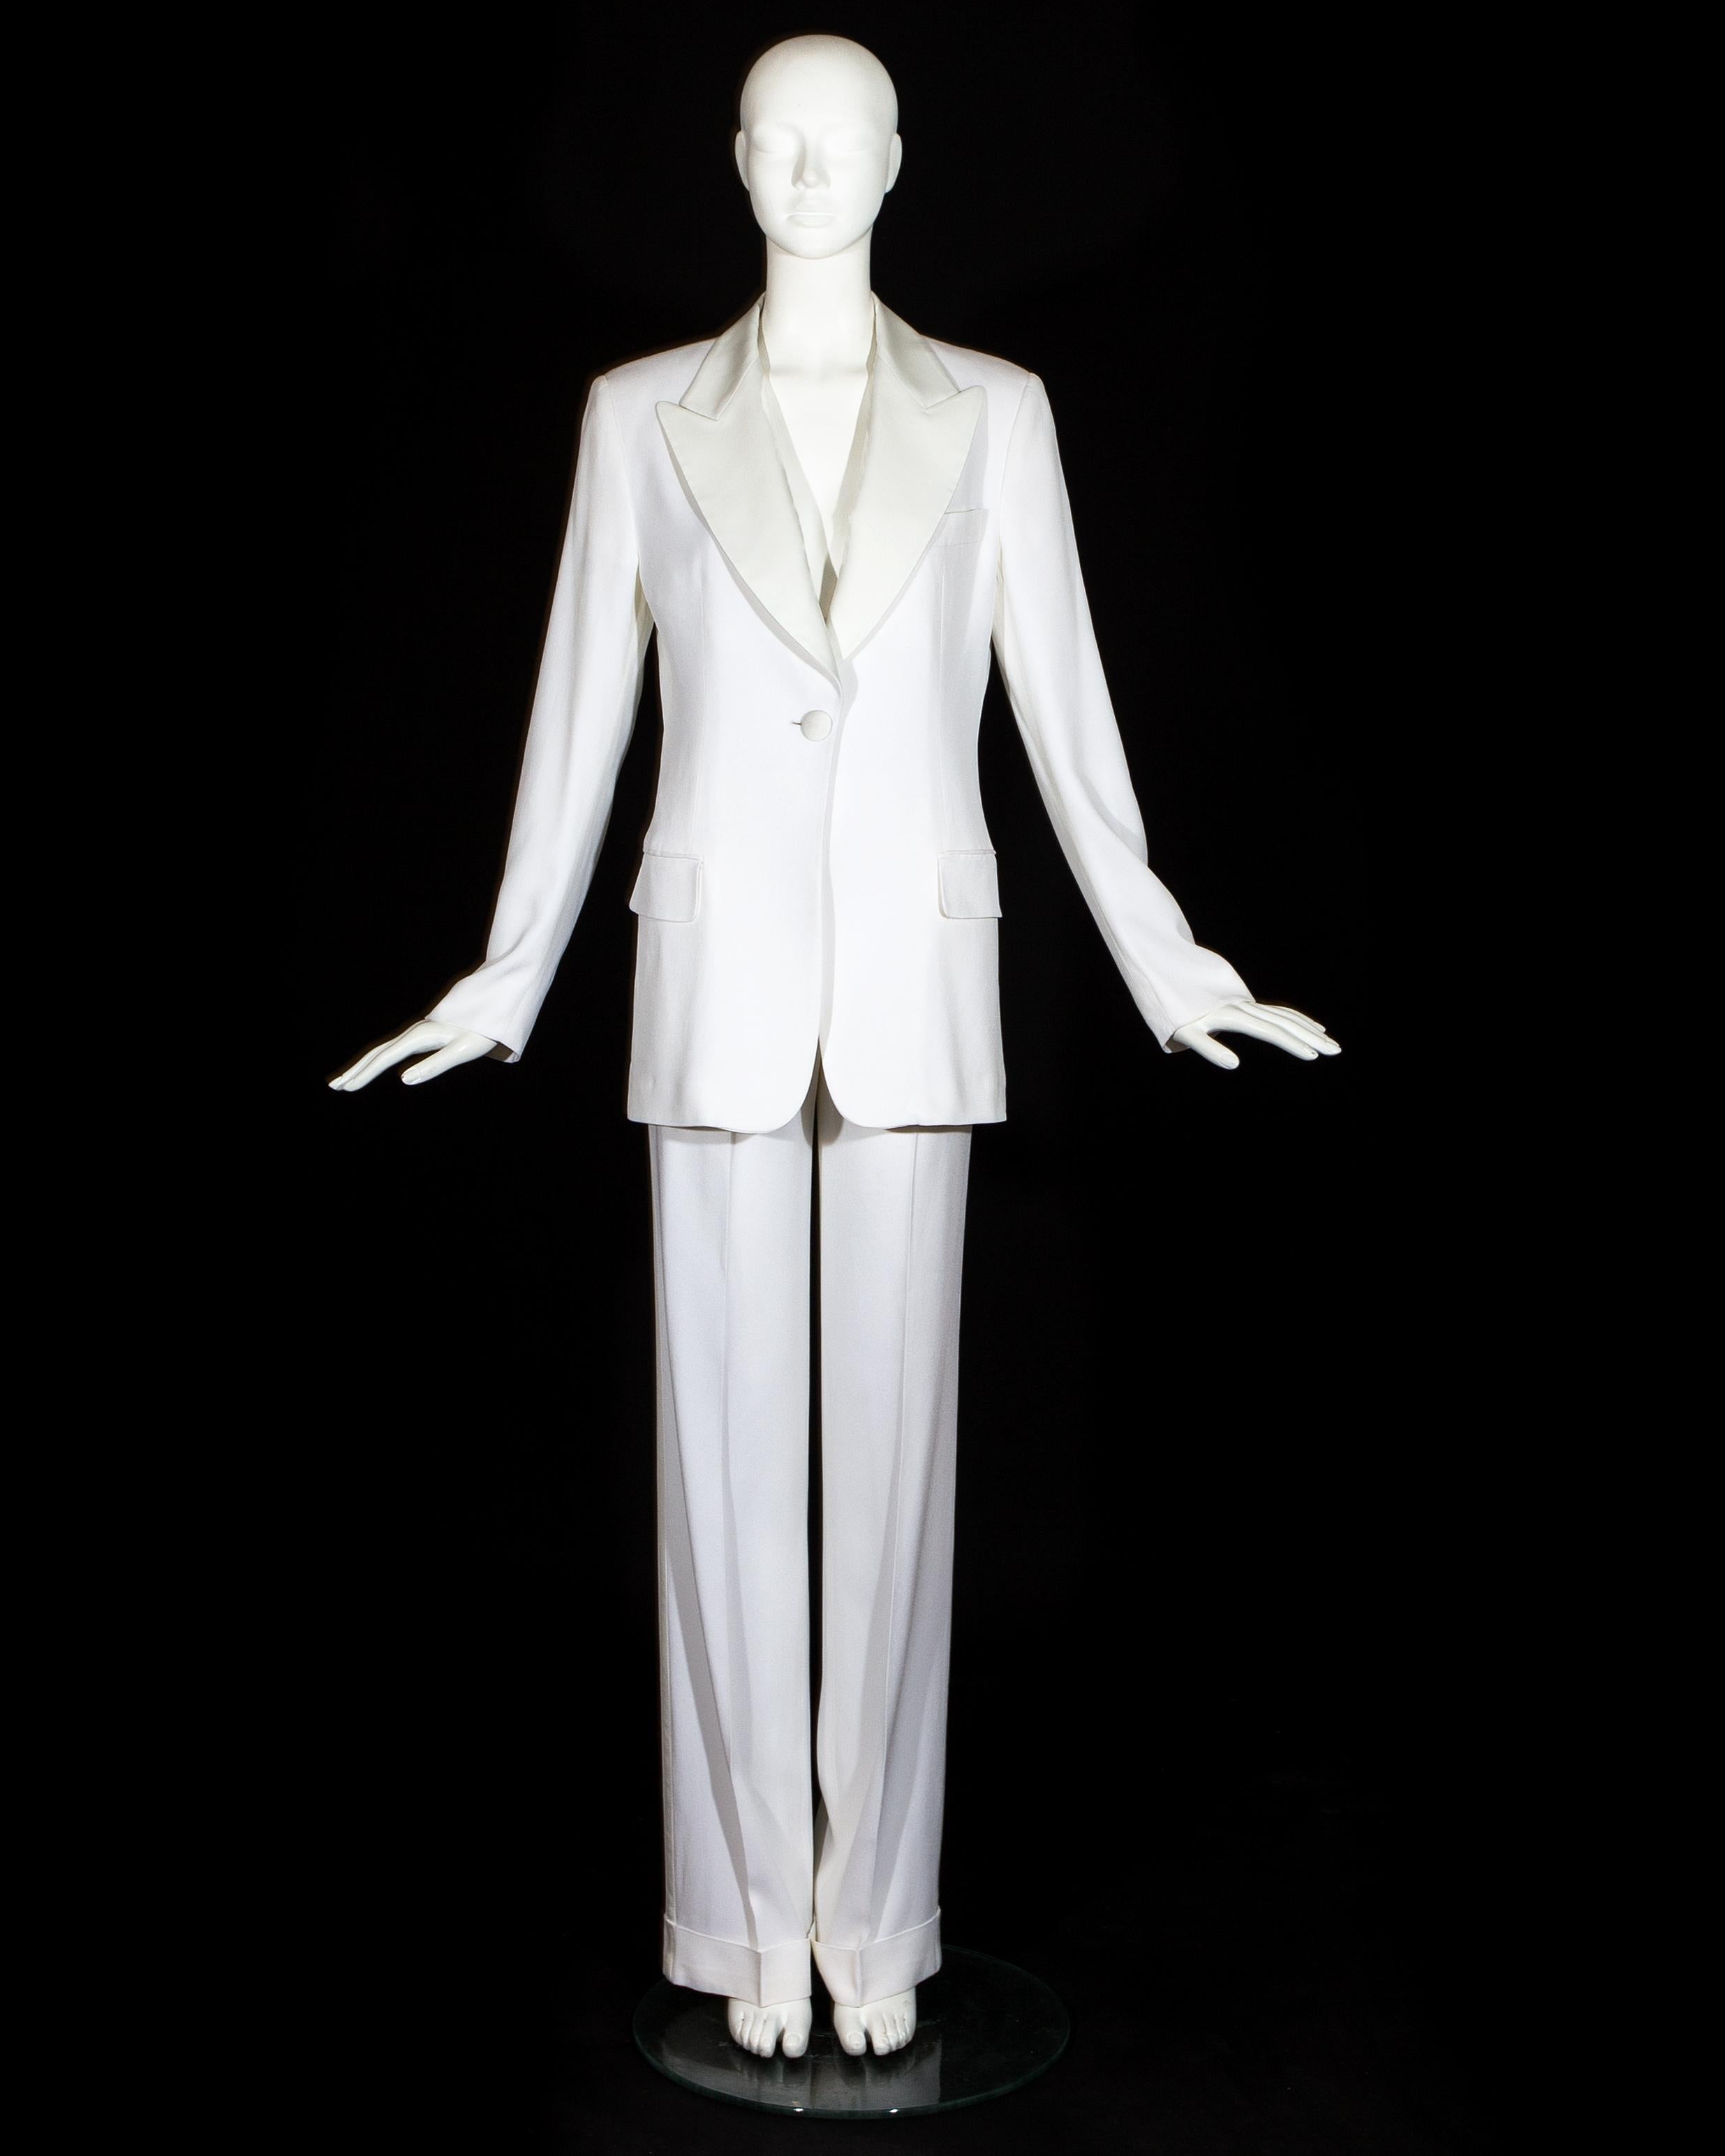 Combinaison pantalon inspirée de Bianca Jagger. Crêpe blanc avec revers et boutons en soie. Pantalon ample et veste de blazer ajustée.

Printemps-été 1995